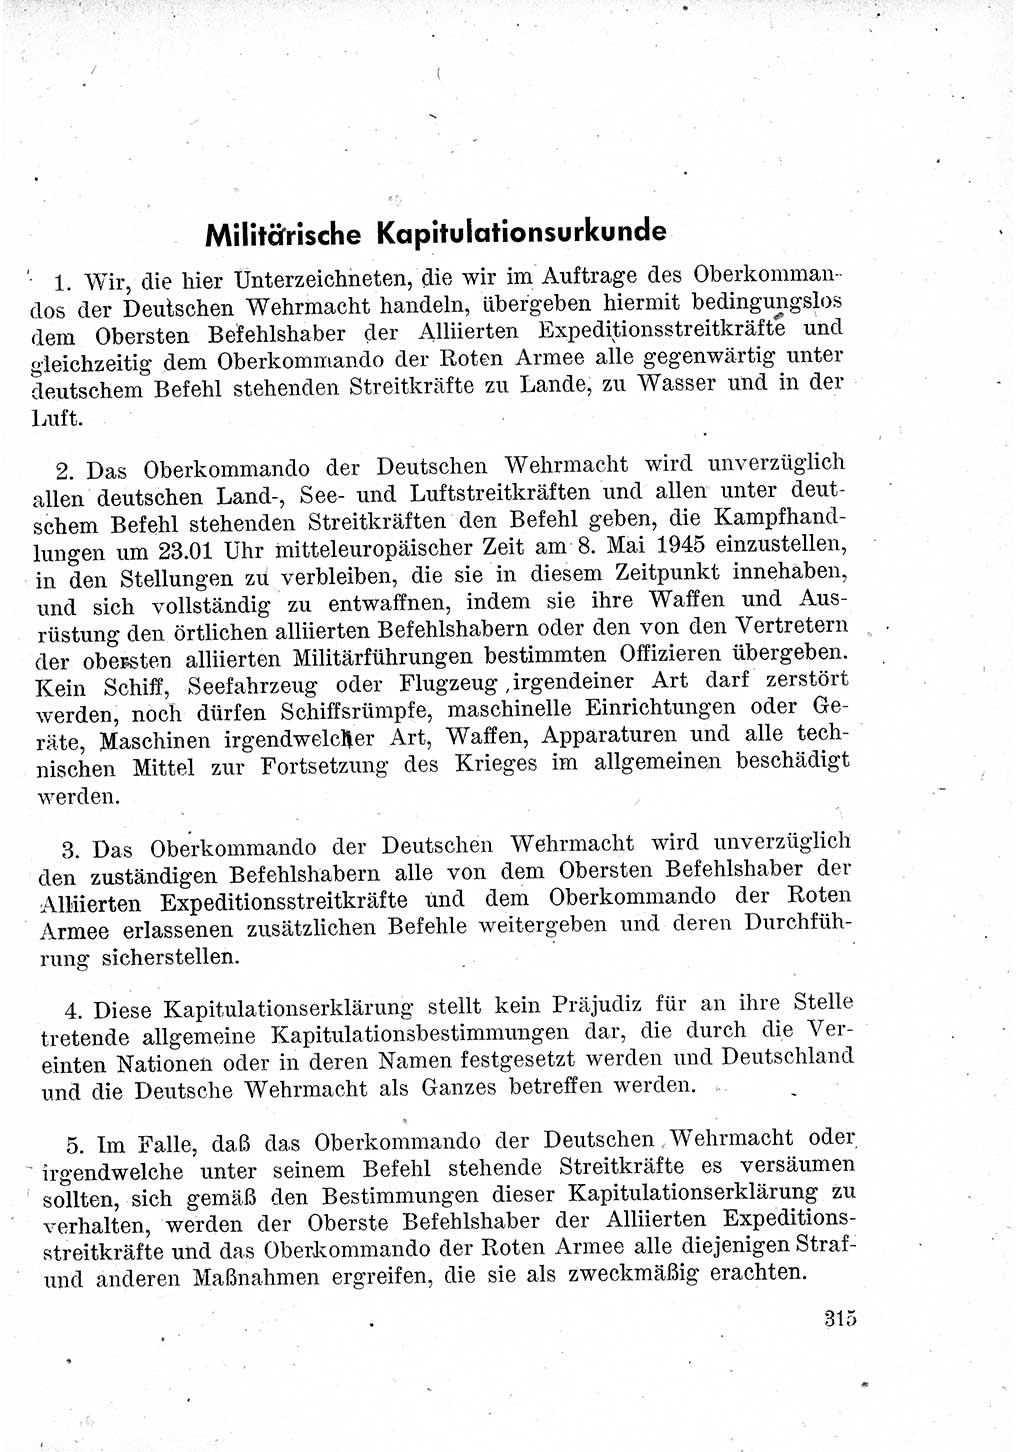 Das Recht der Besatzungsmacht (Deutschland), Proklamationen, Deklerationen, Verordnungen, Gesetze und Bekanntmachungen 1947, Seite 315 (R. Bes. Dtl. 1947, S. 315)